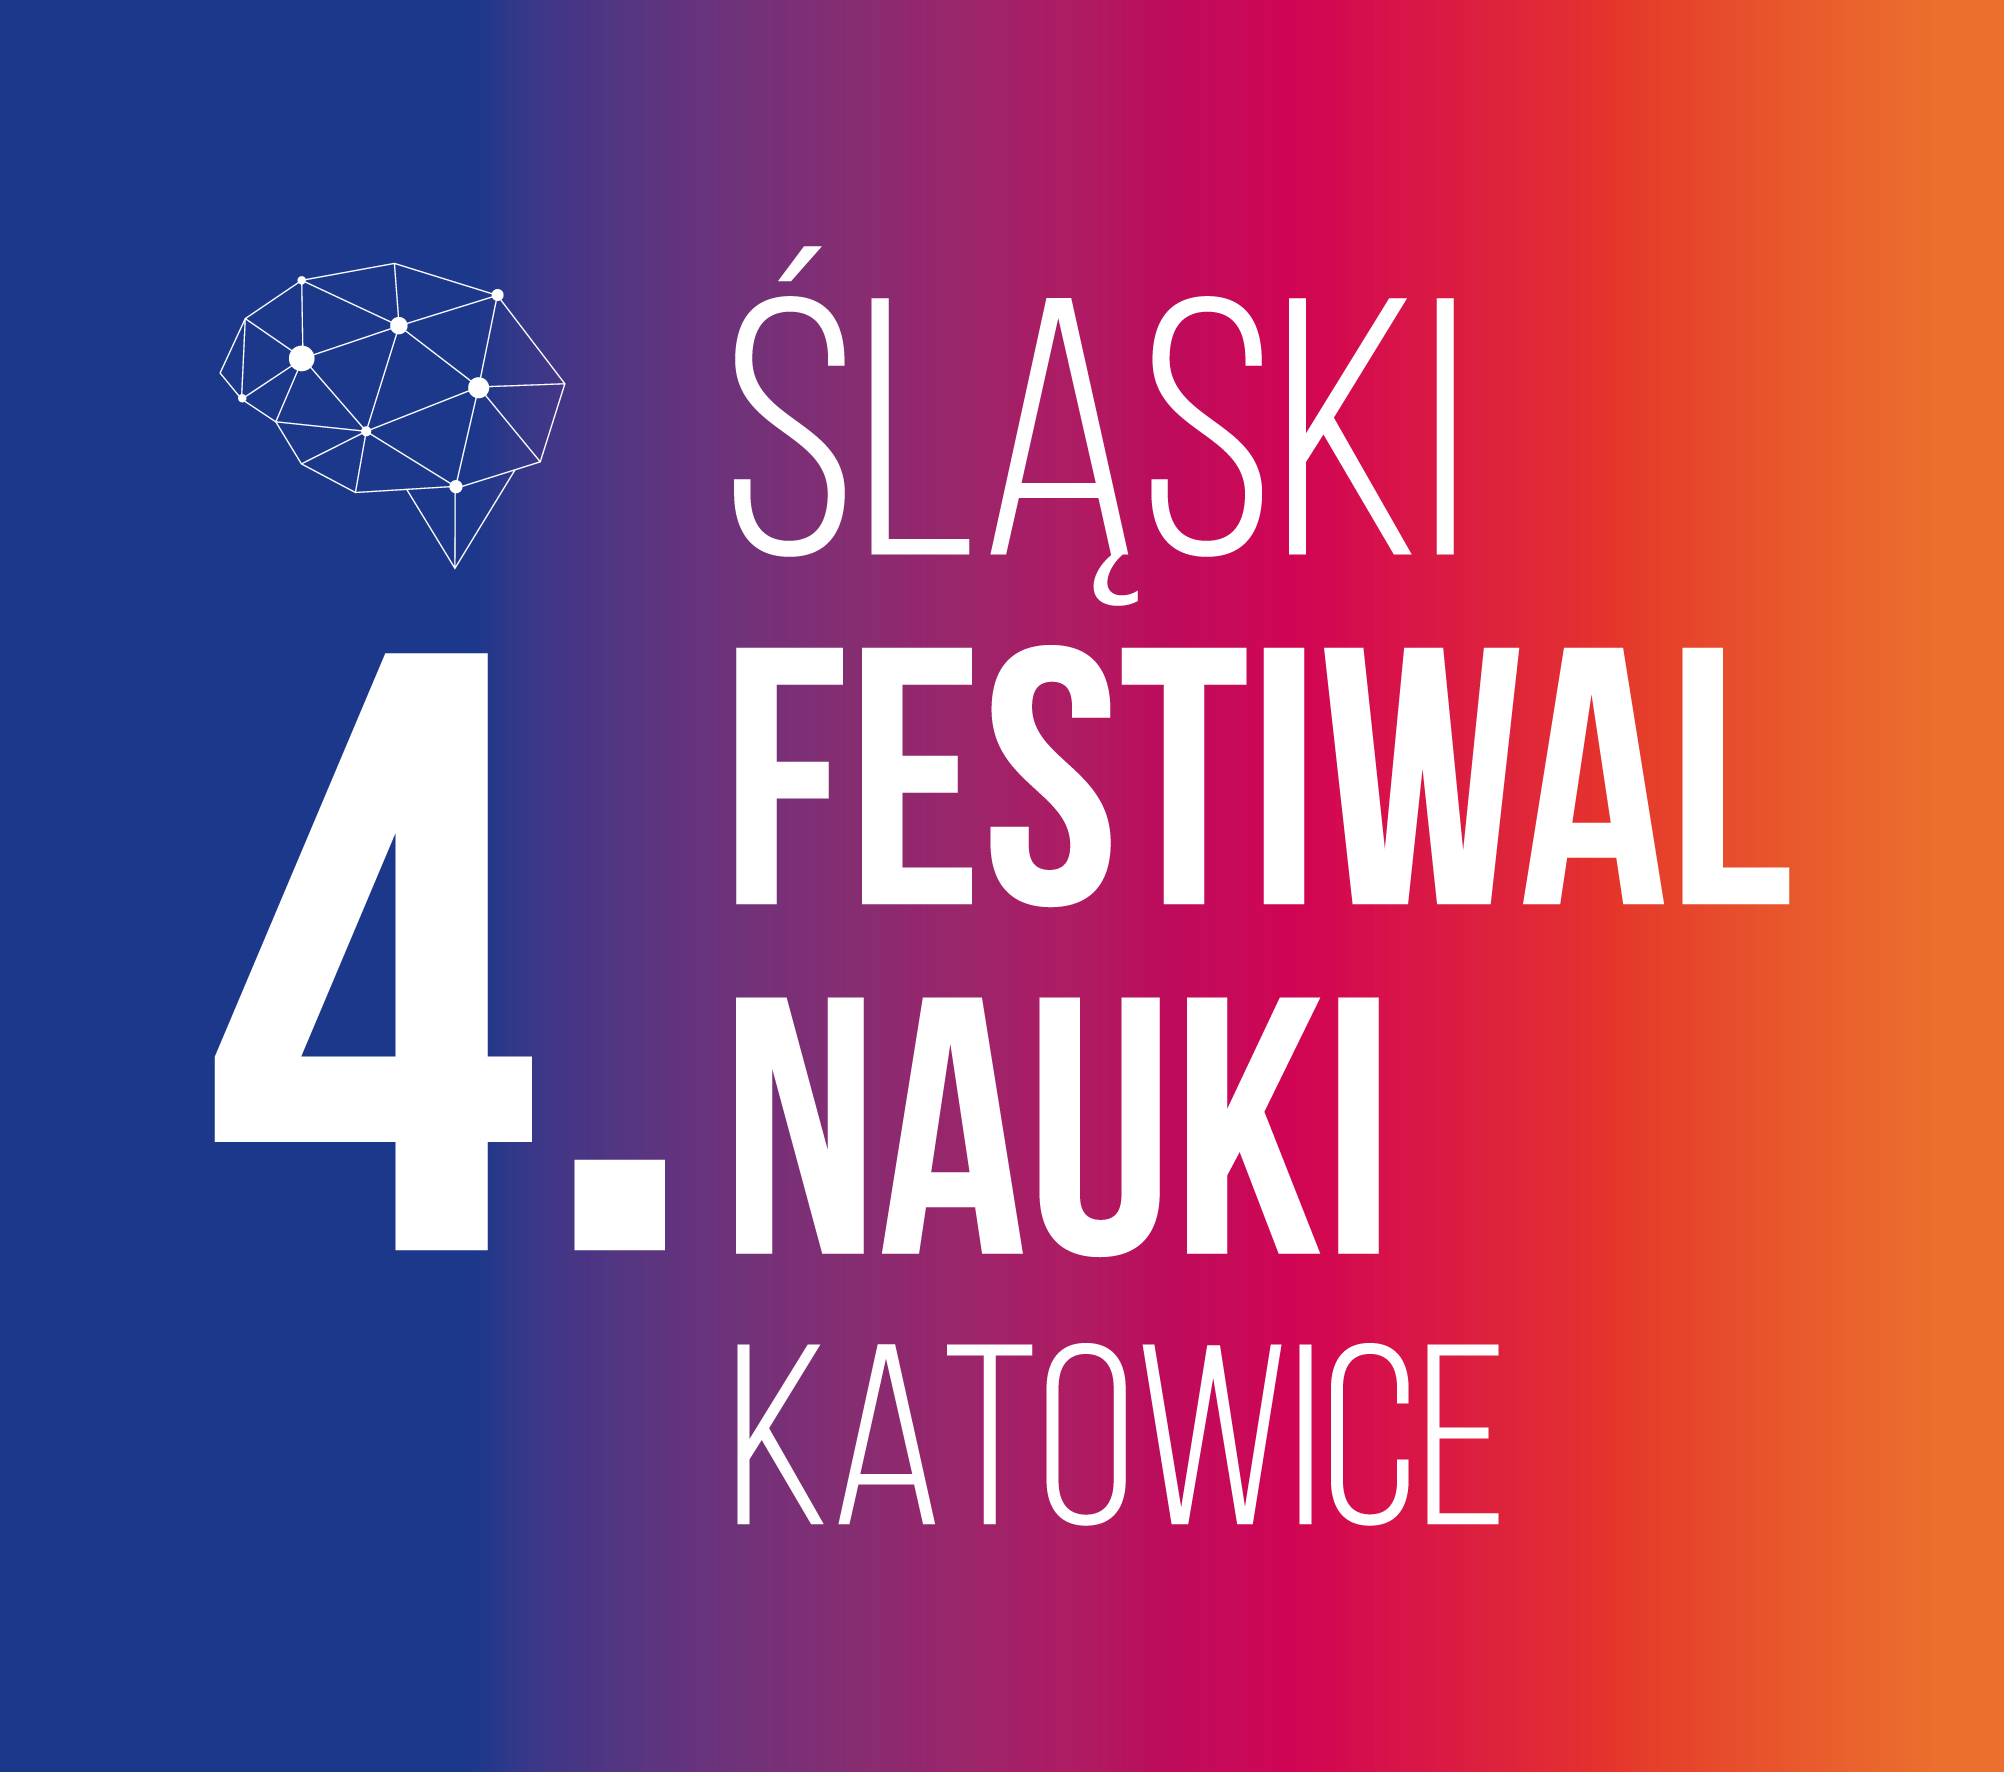 Śląski Festiwal Nauki w Katowicach